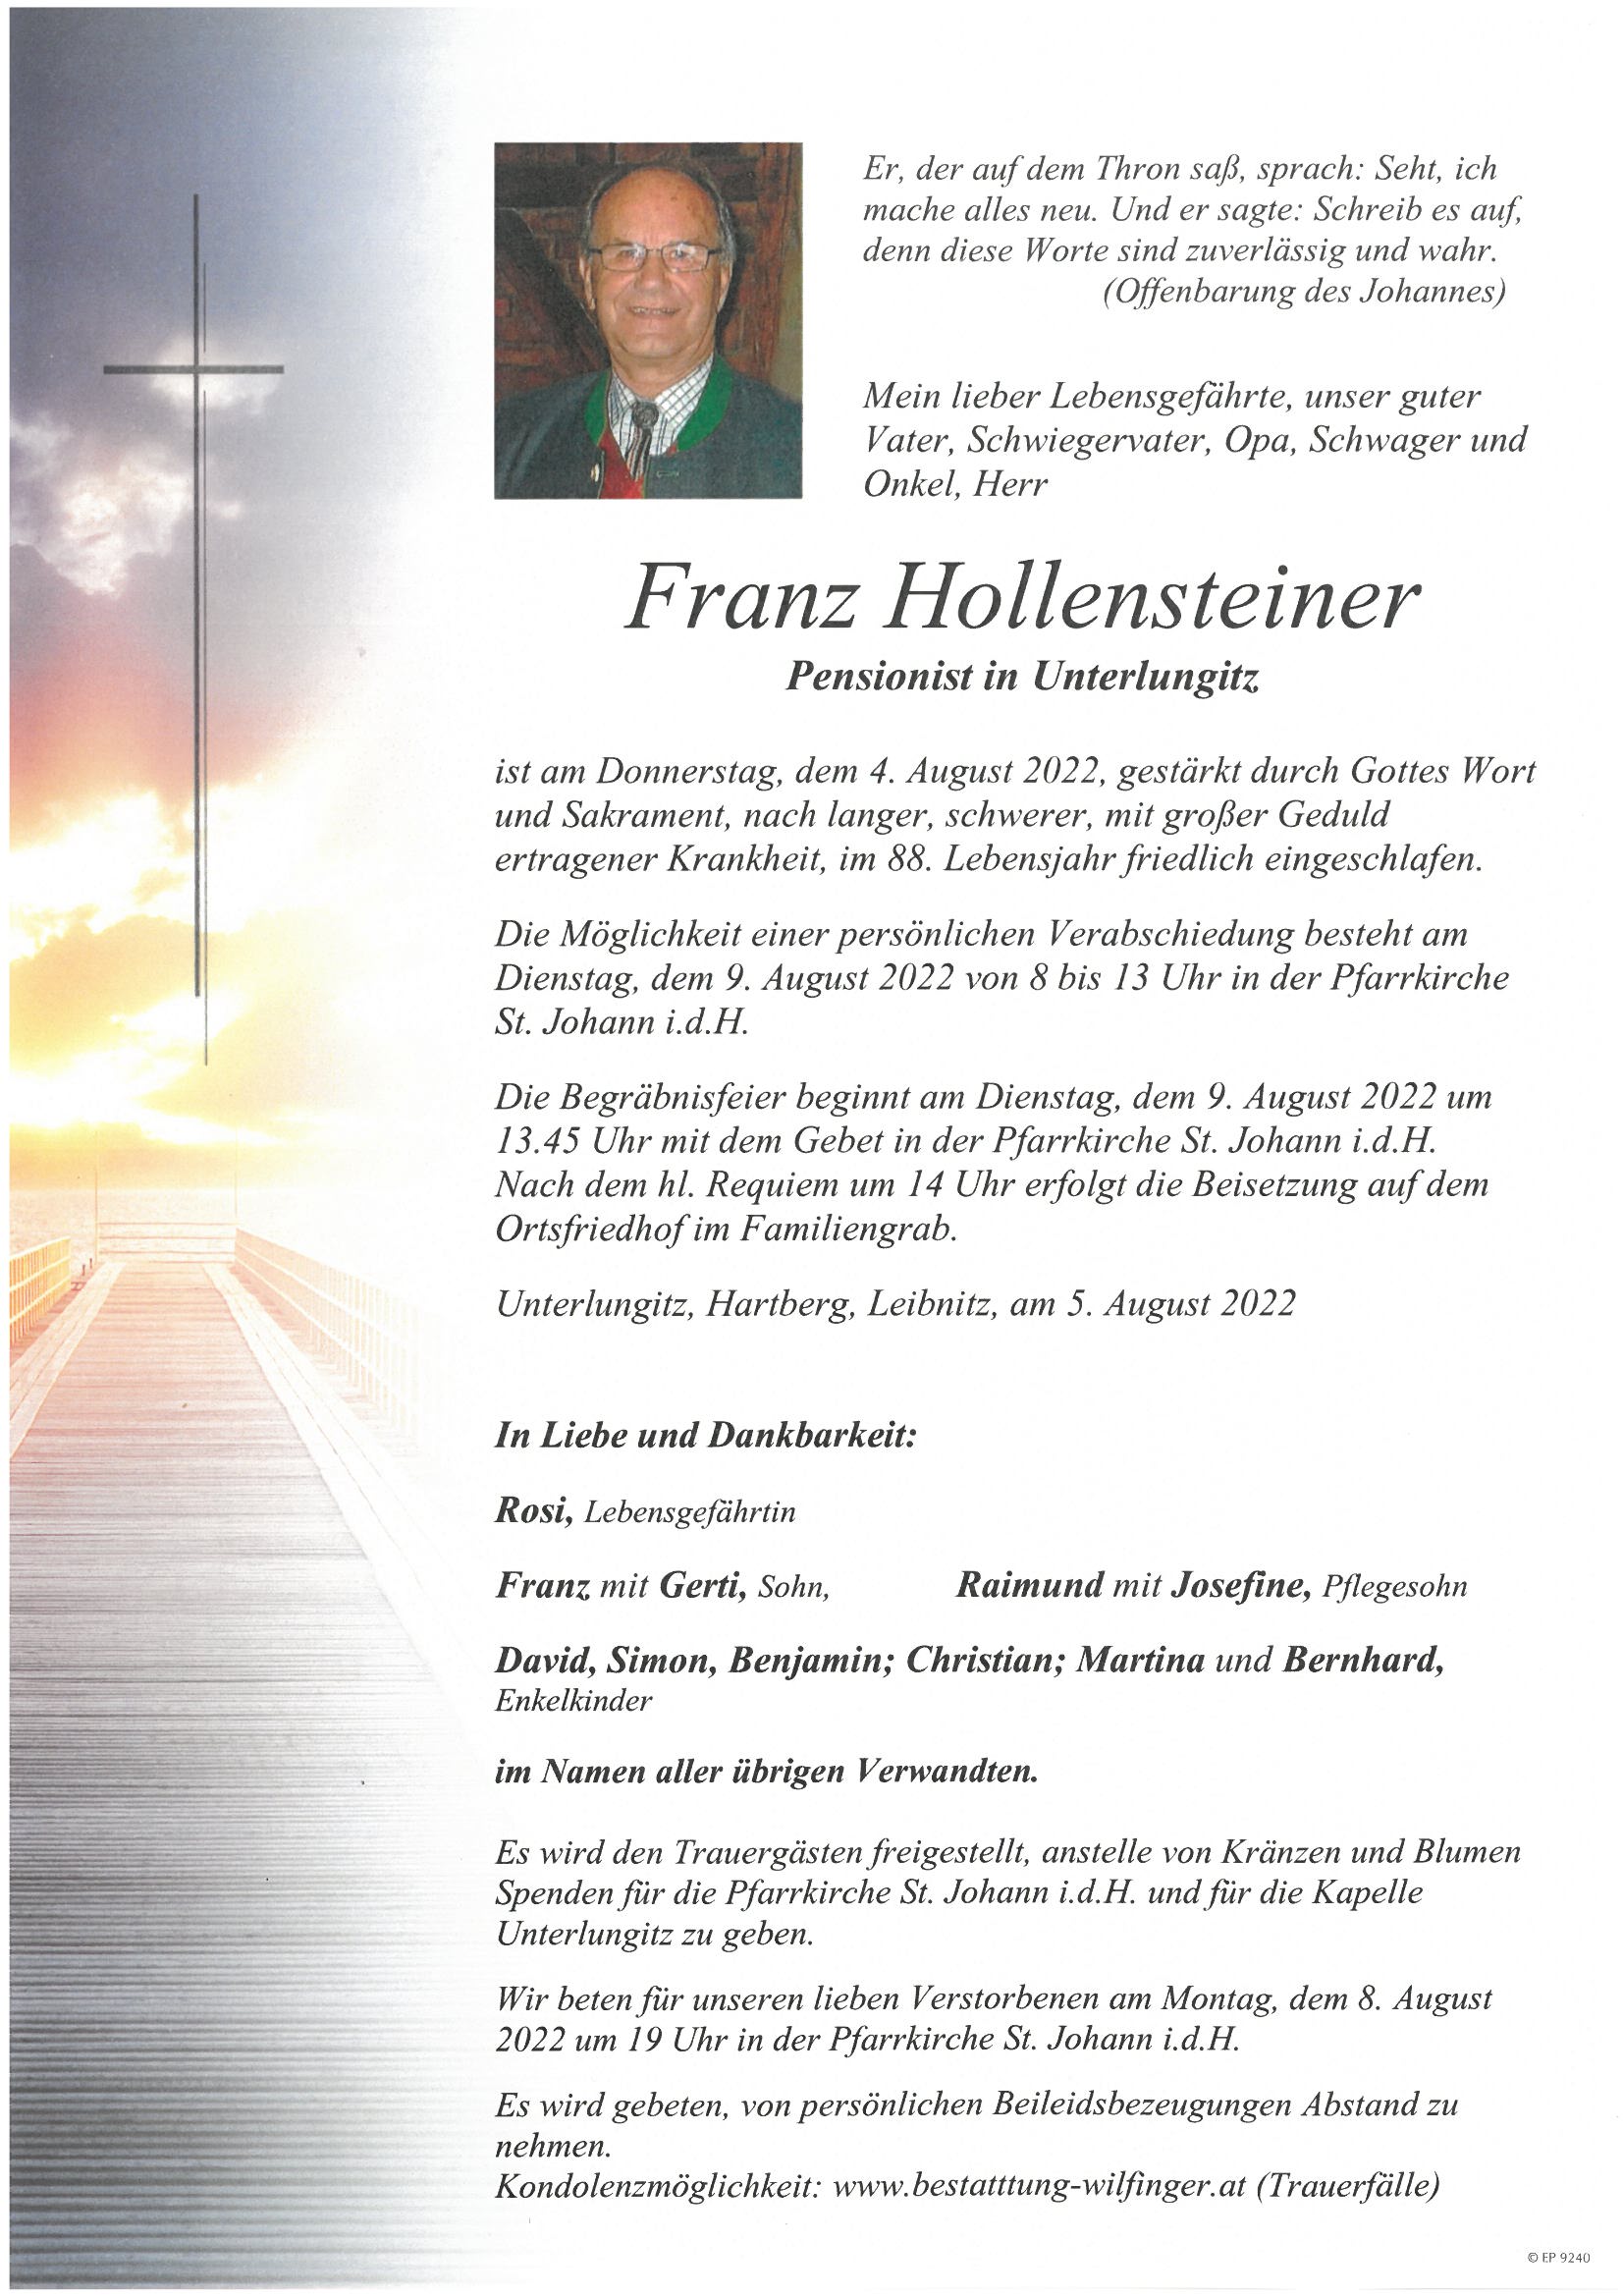 Franz Hollensteiner, Unterlungitz